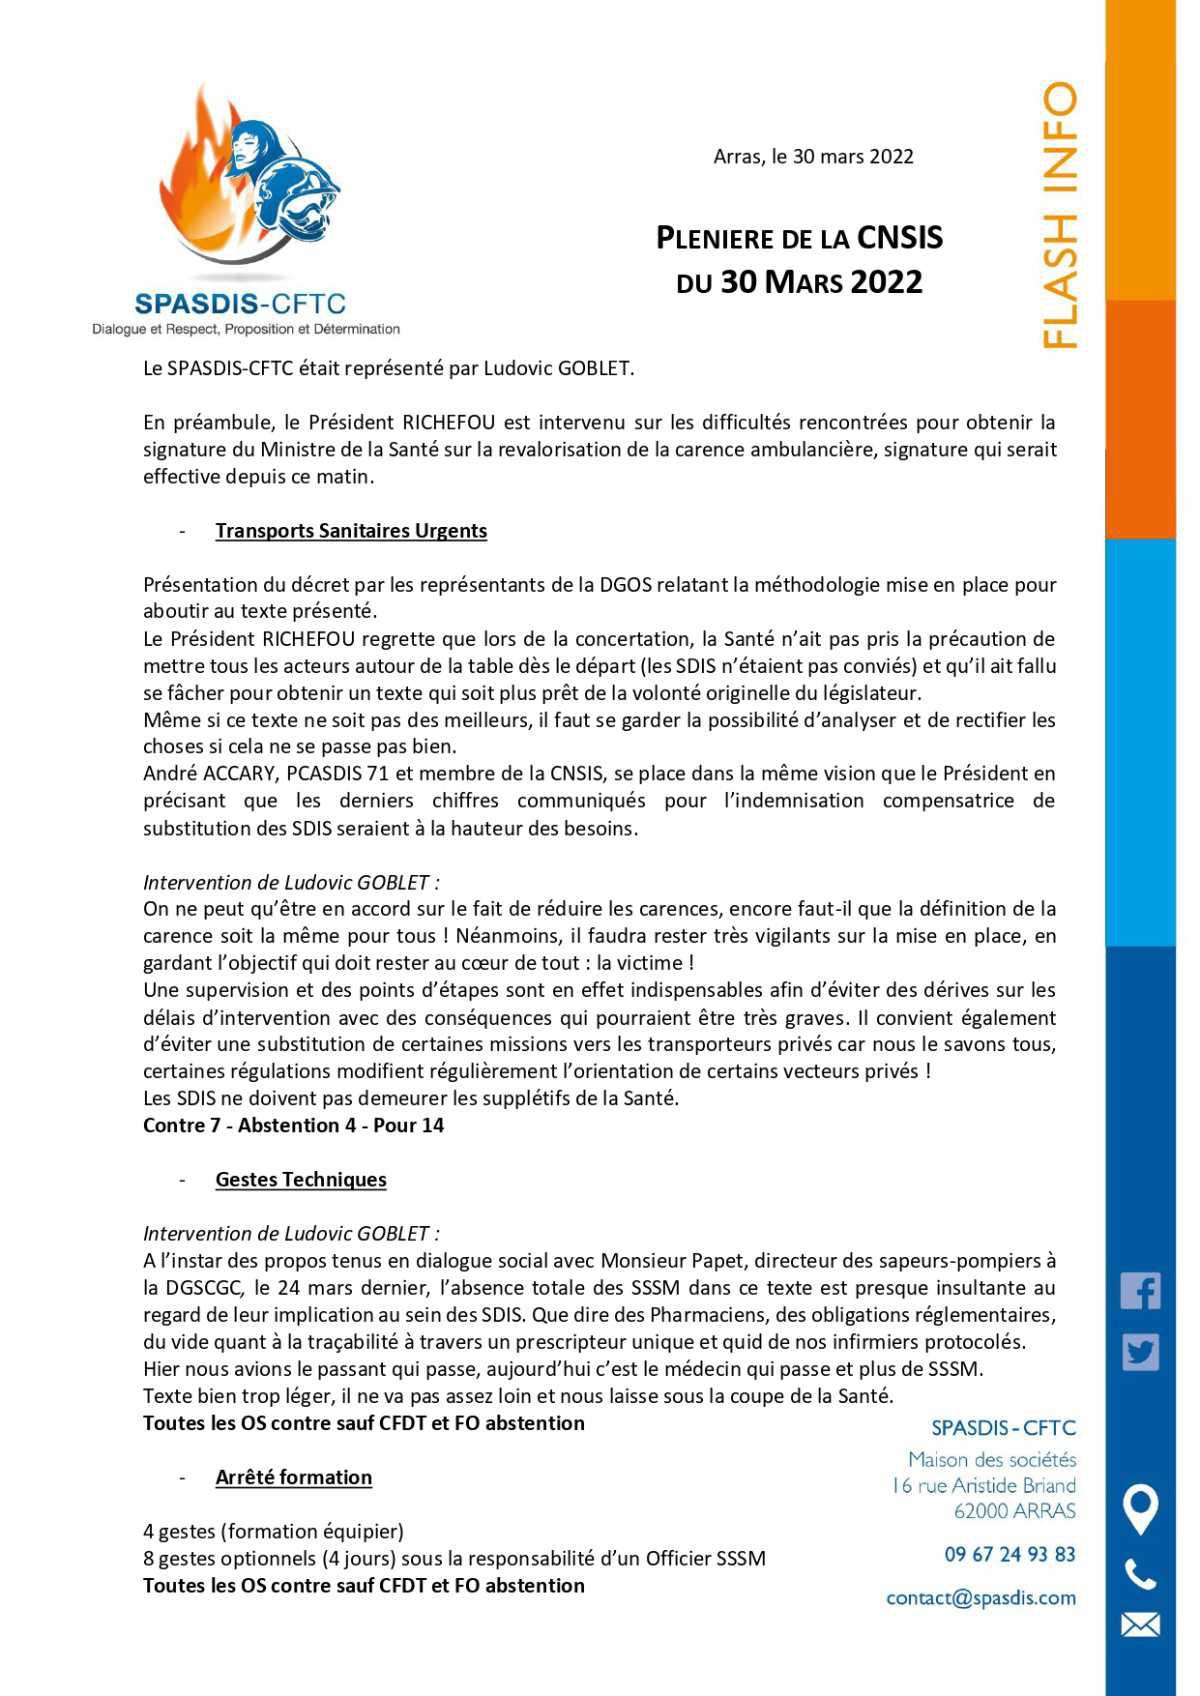 Plénière de la CNSIS du 30 mars 2022